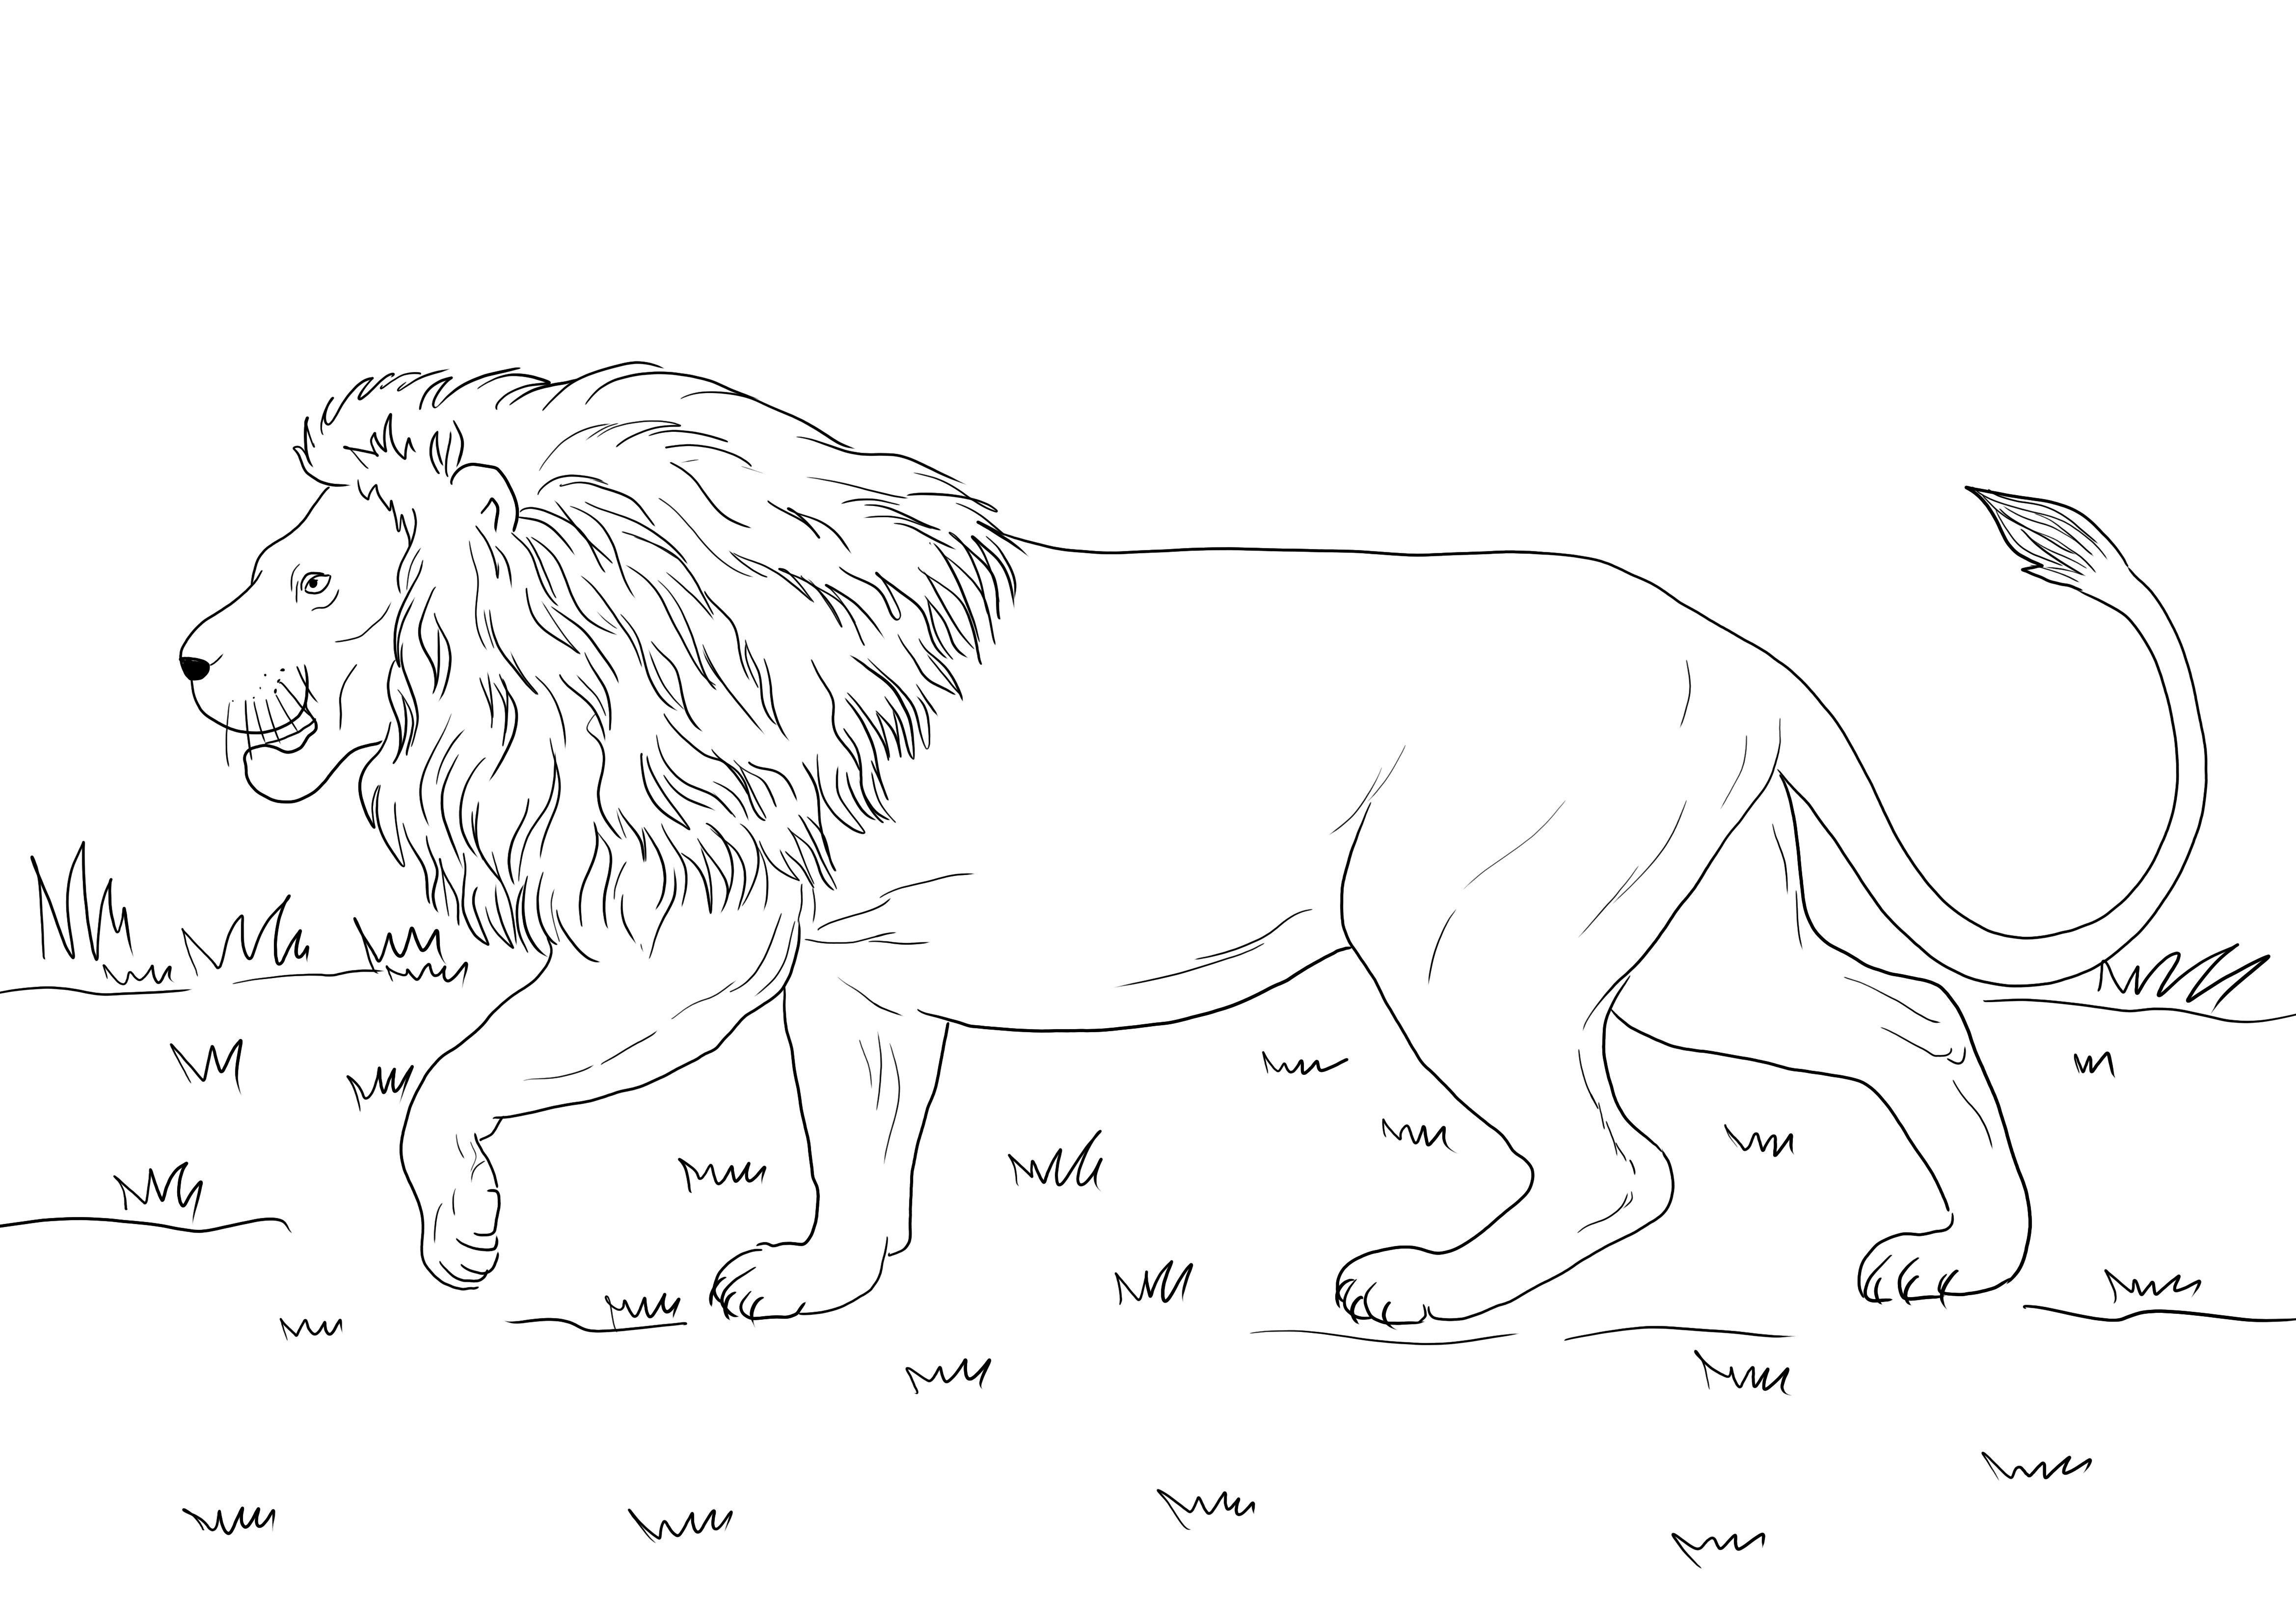 Dibujo para colorear de un león africano caminando gratis para descargar o imprimir